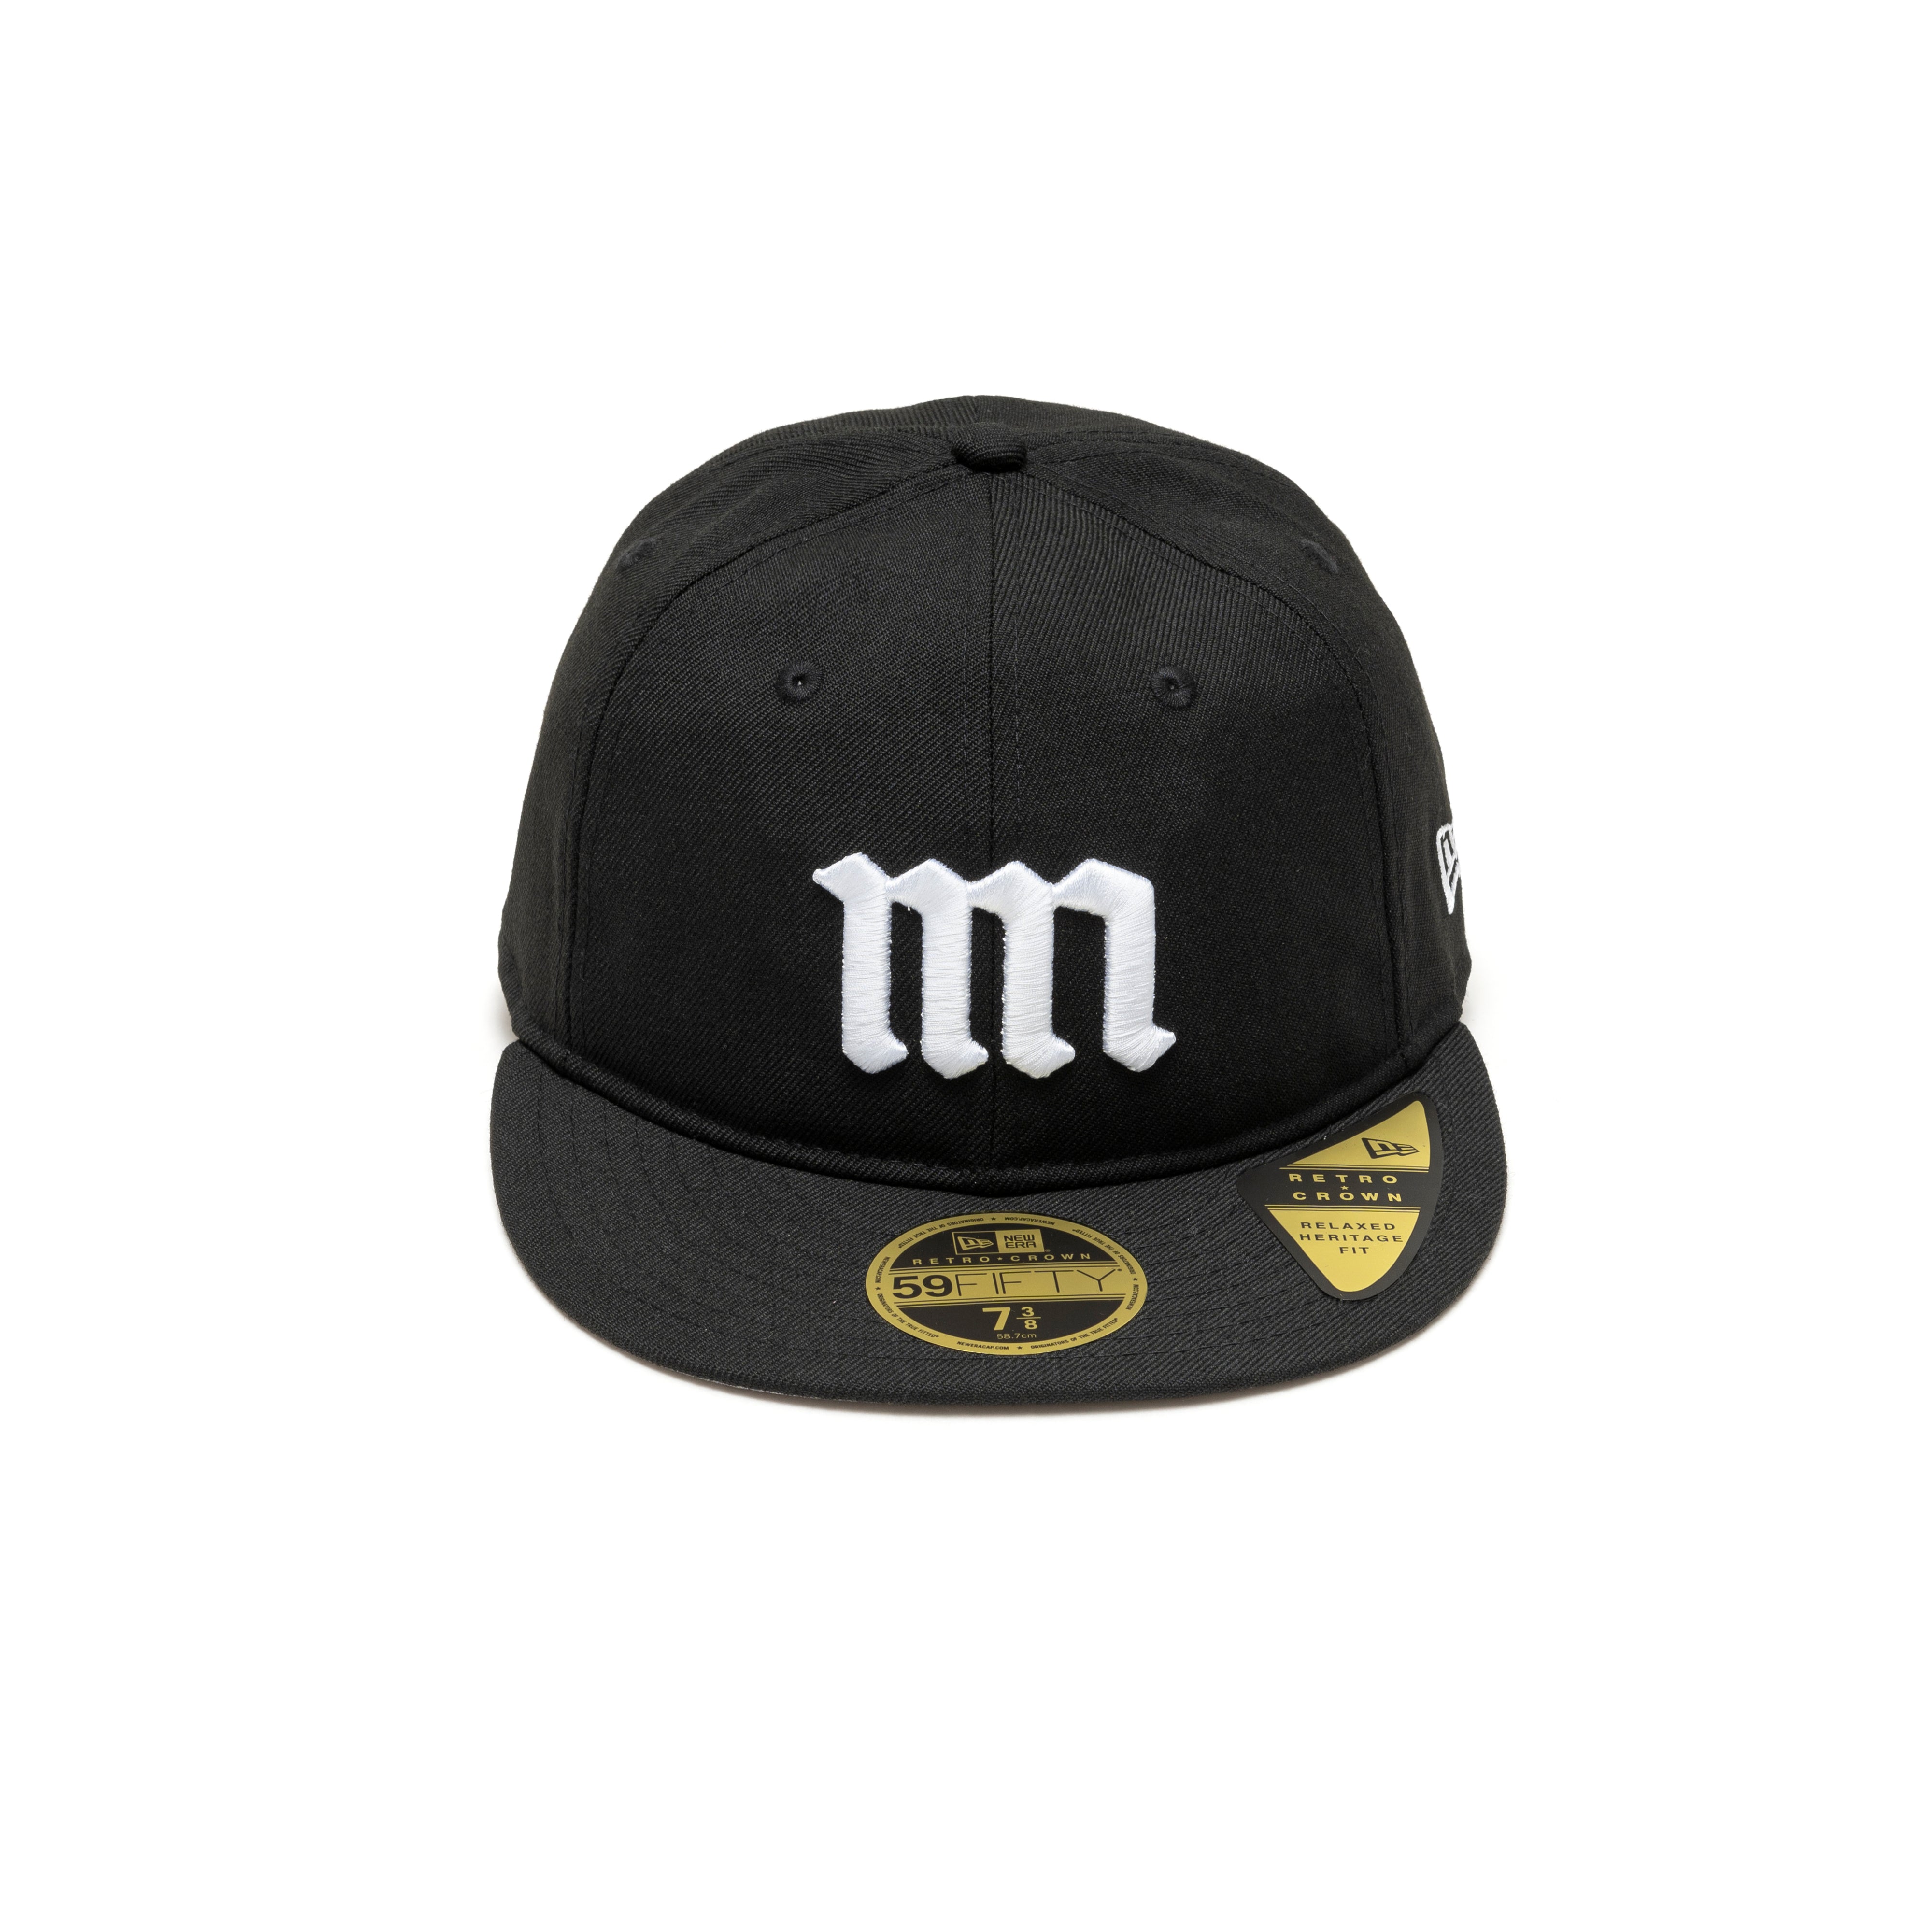 MIN-NANO - Dsminnano New Era Hat - (Black) – DSMG E-SHOP